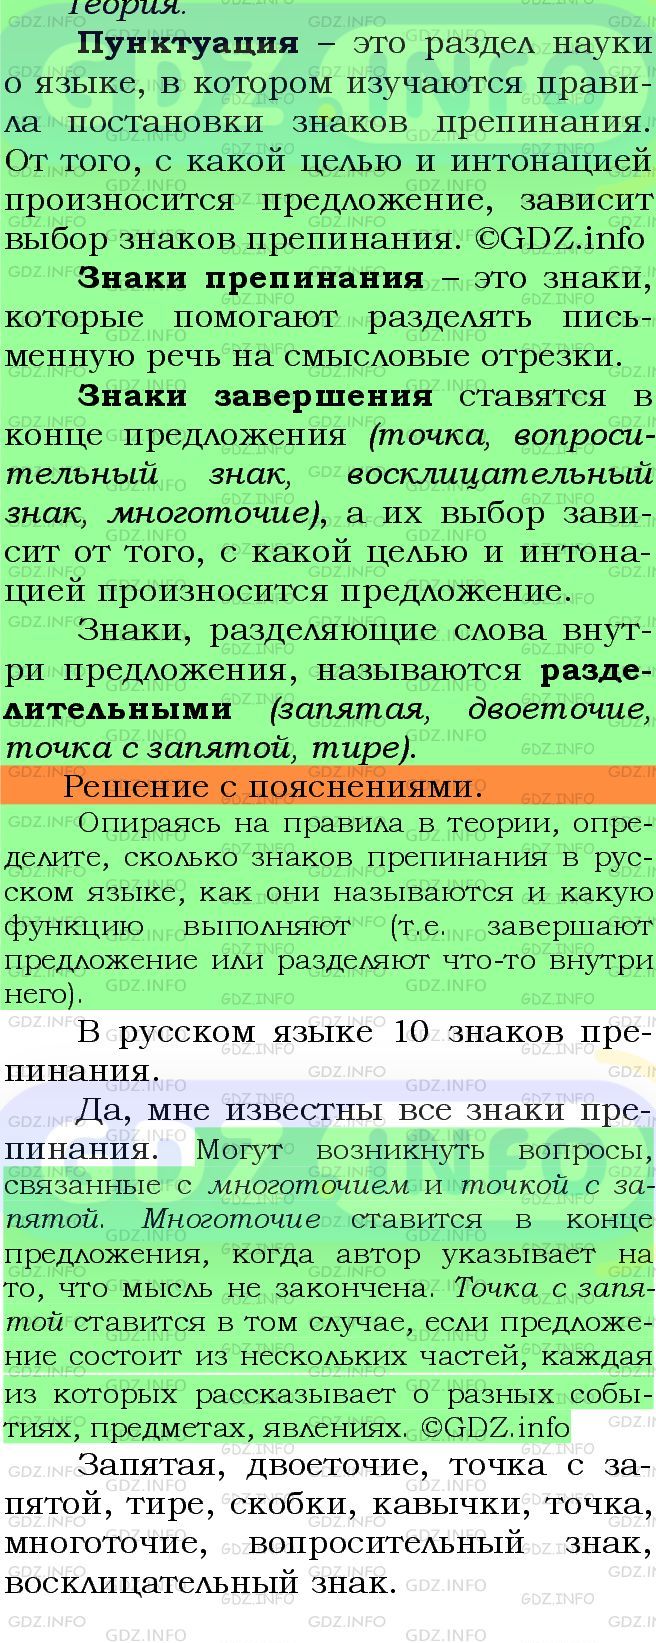 Фото подробного решения: Номер №126 из ГДЗ по Русскому языку 5 класс: Ладыженская Т.А.